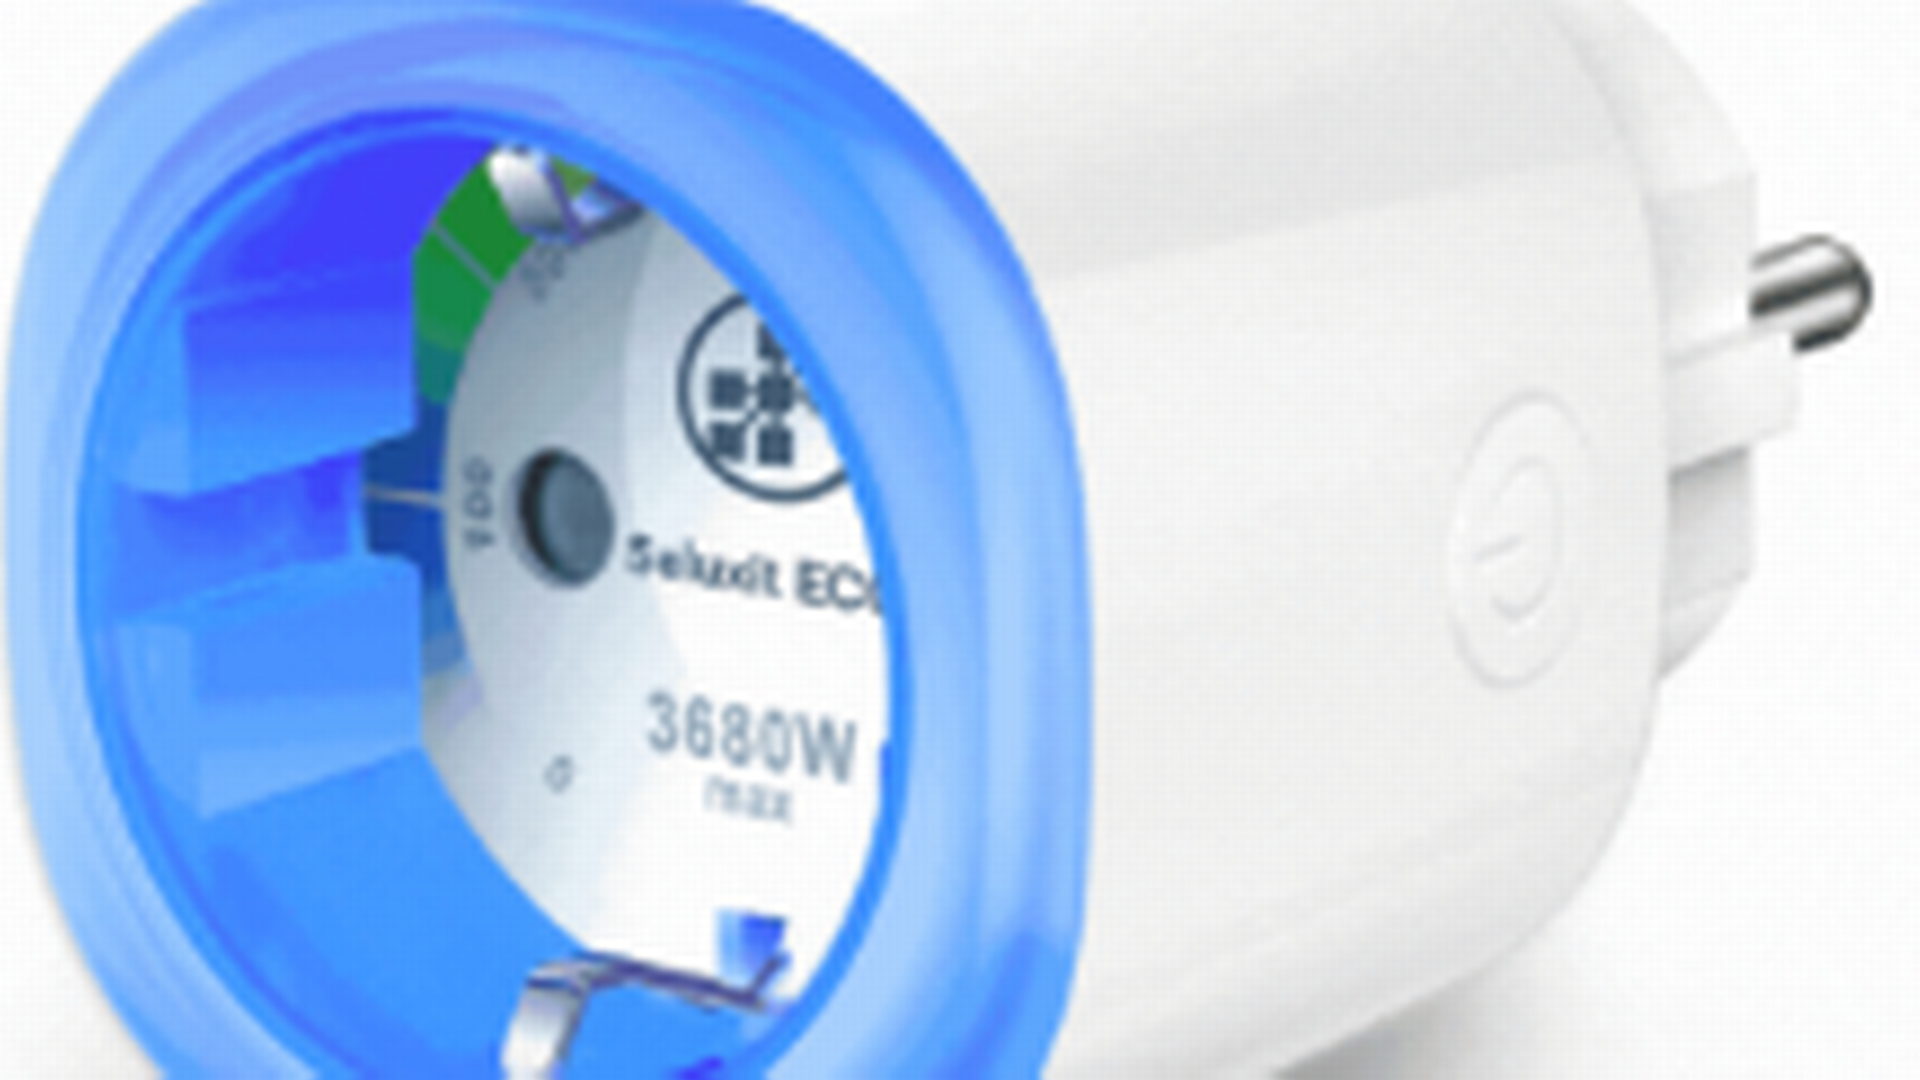 Ecop Smart Plug er den IoT-enhed, til undervisning i energieffektivisering, som Seluxit har får en stor ordre på til spanske skoler. | Foto: PR